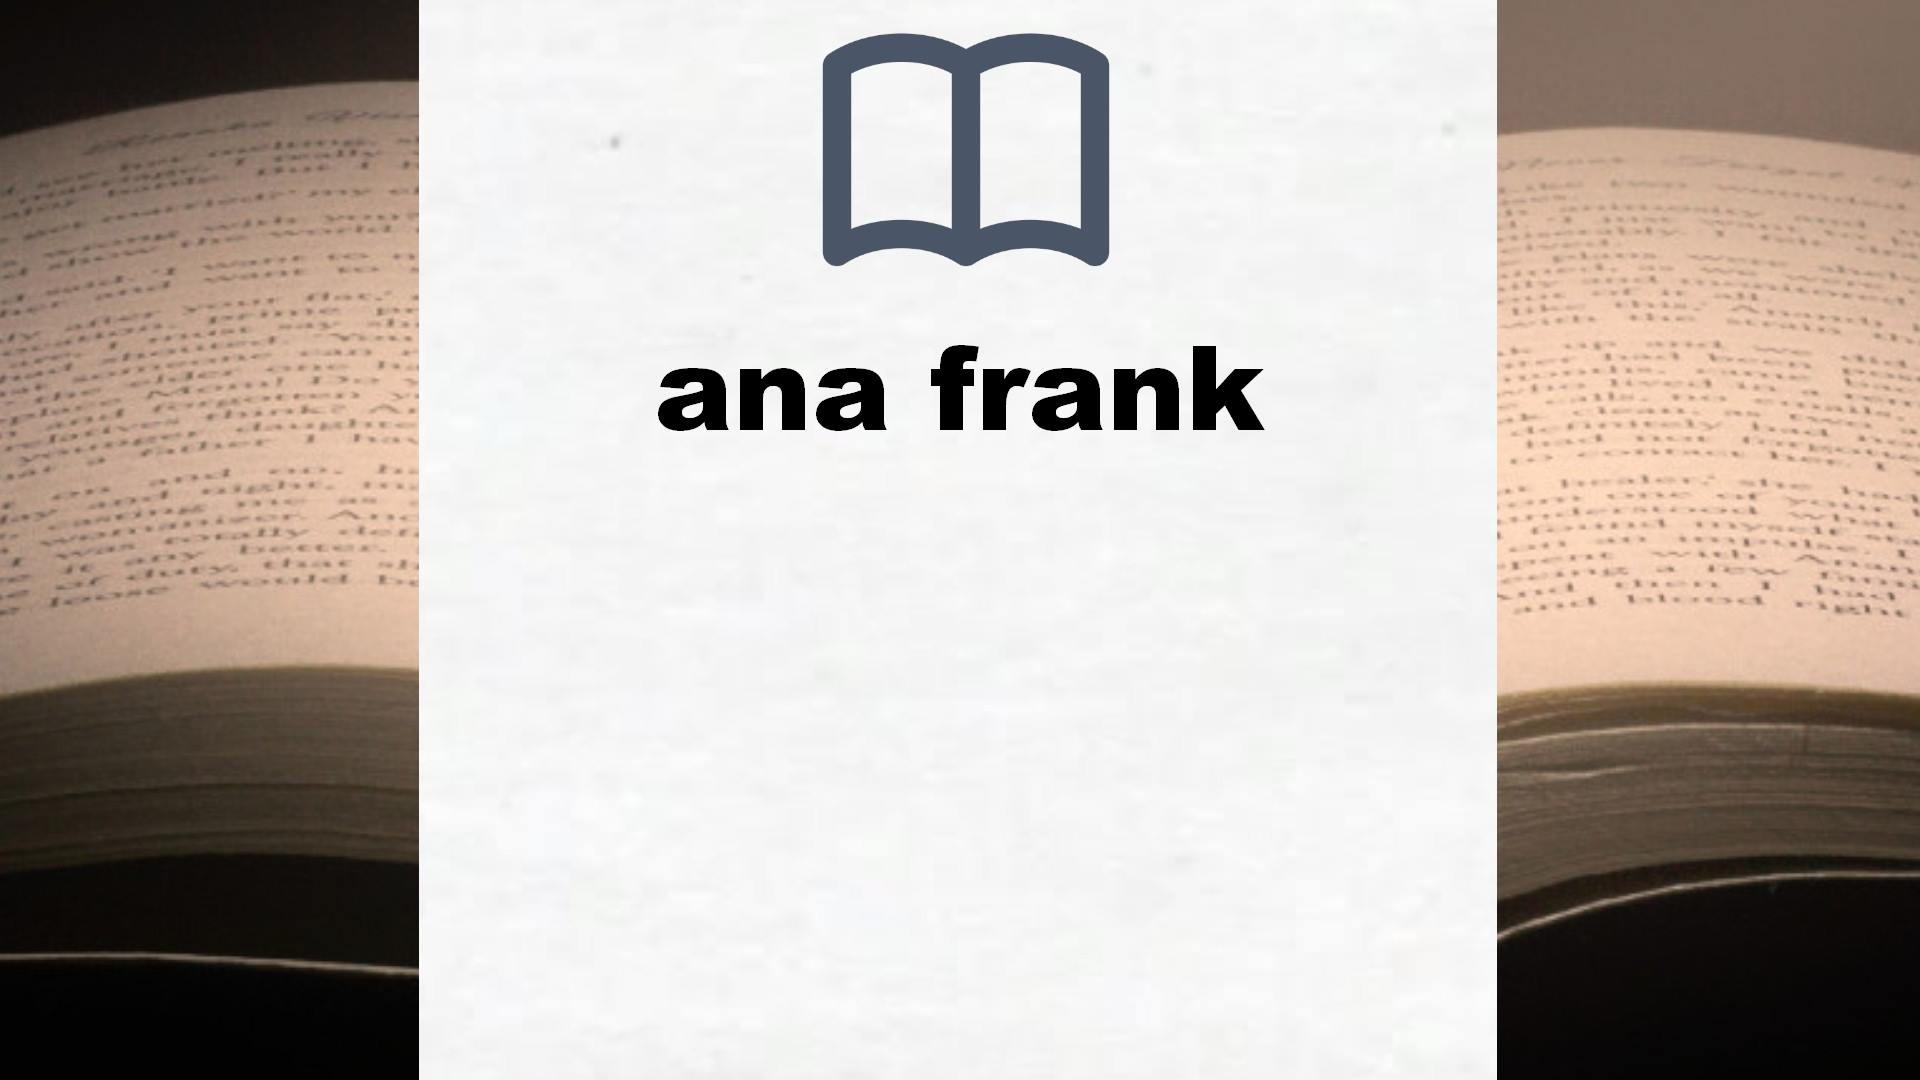 Libros sobre ana frank